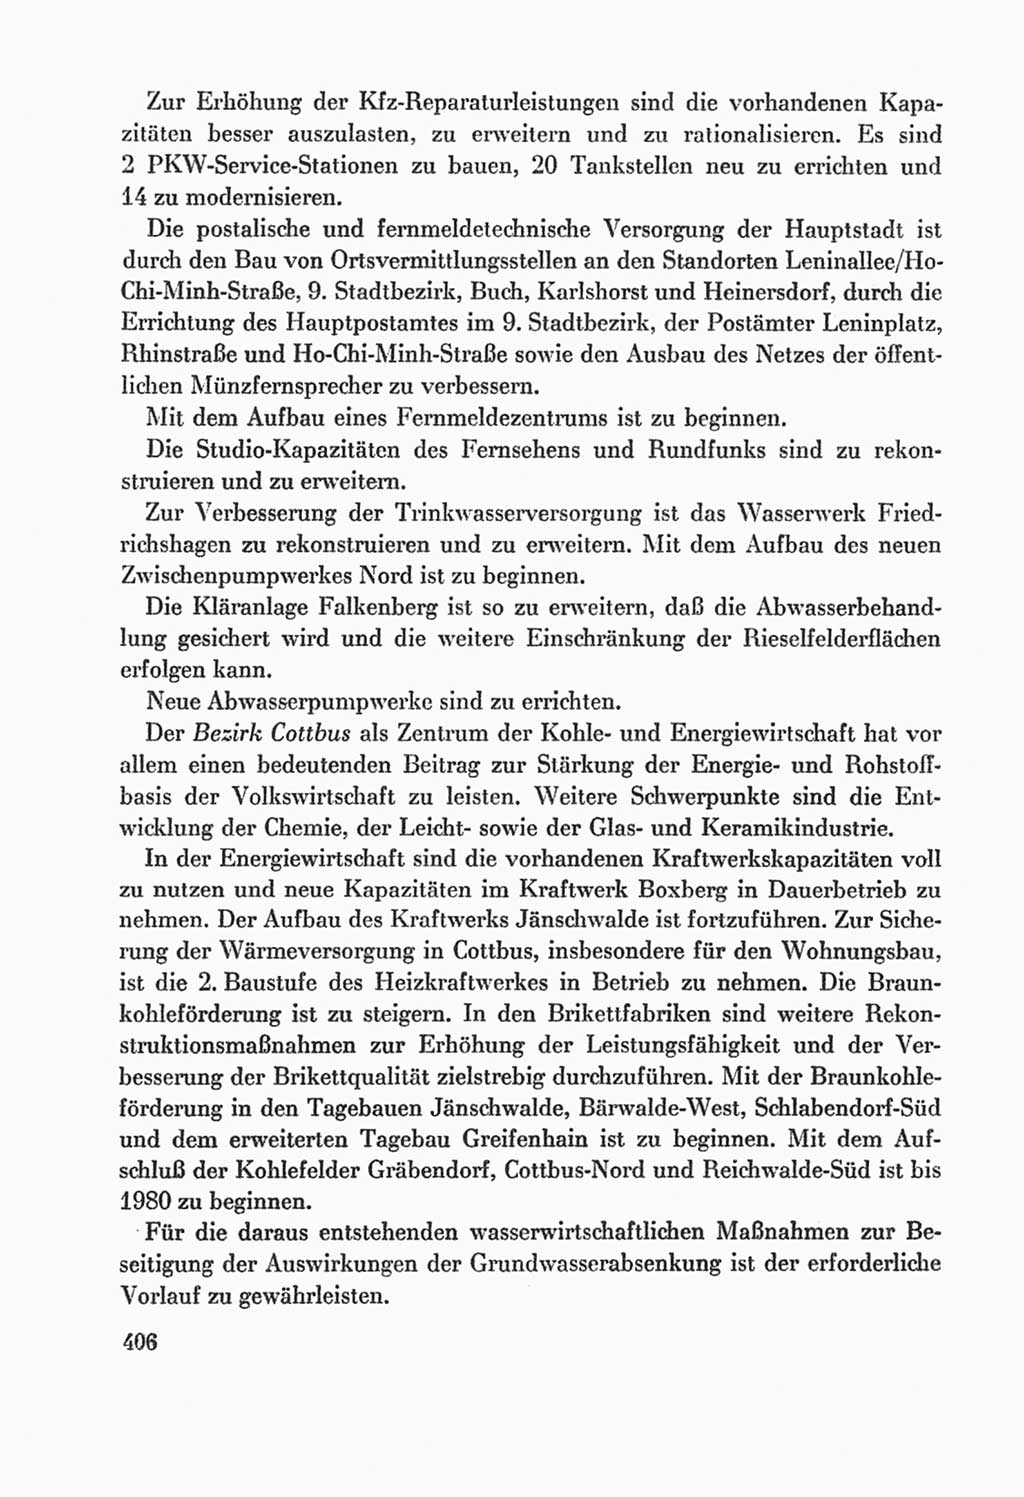 Protokoll der Verhandlungen des Ⅸ. Parteitages der Sozialistischen Einheitspartei Deutschlands (SED) [Deutsche Demokratische Republik (DDR)] 1976, Band 2, Seite 406 (Prot. Verh. Ⅸ. PT SED DDR 1976, Bd. 2, S. 406)